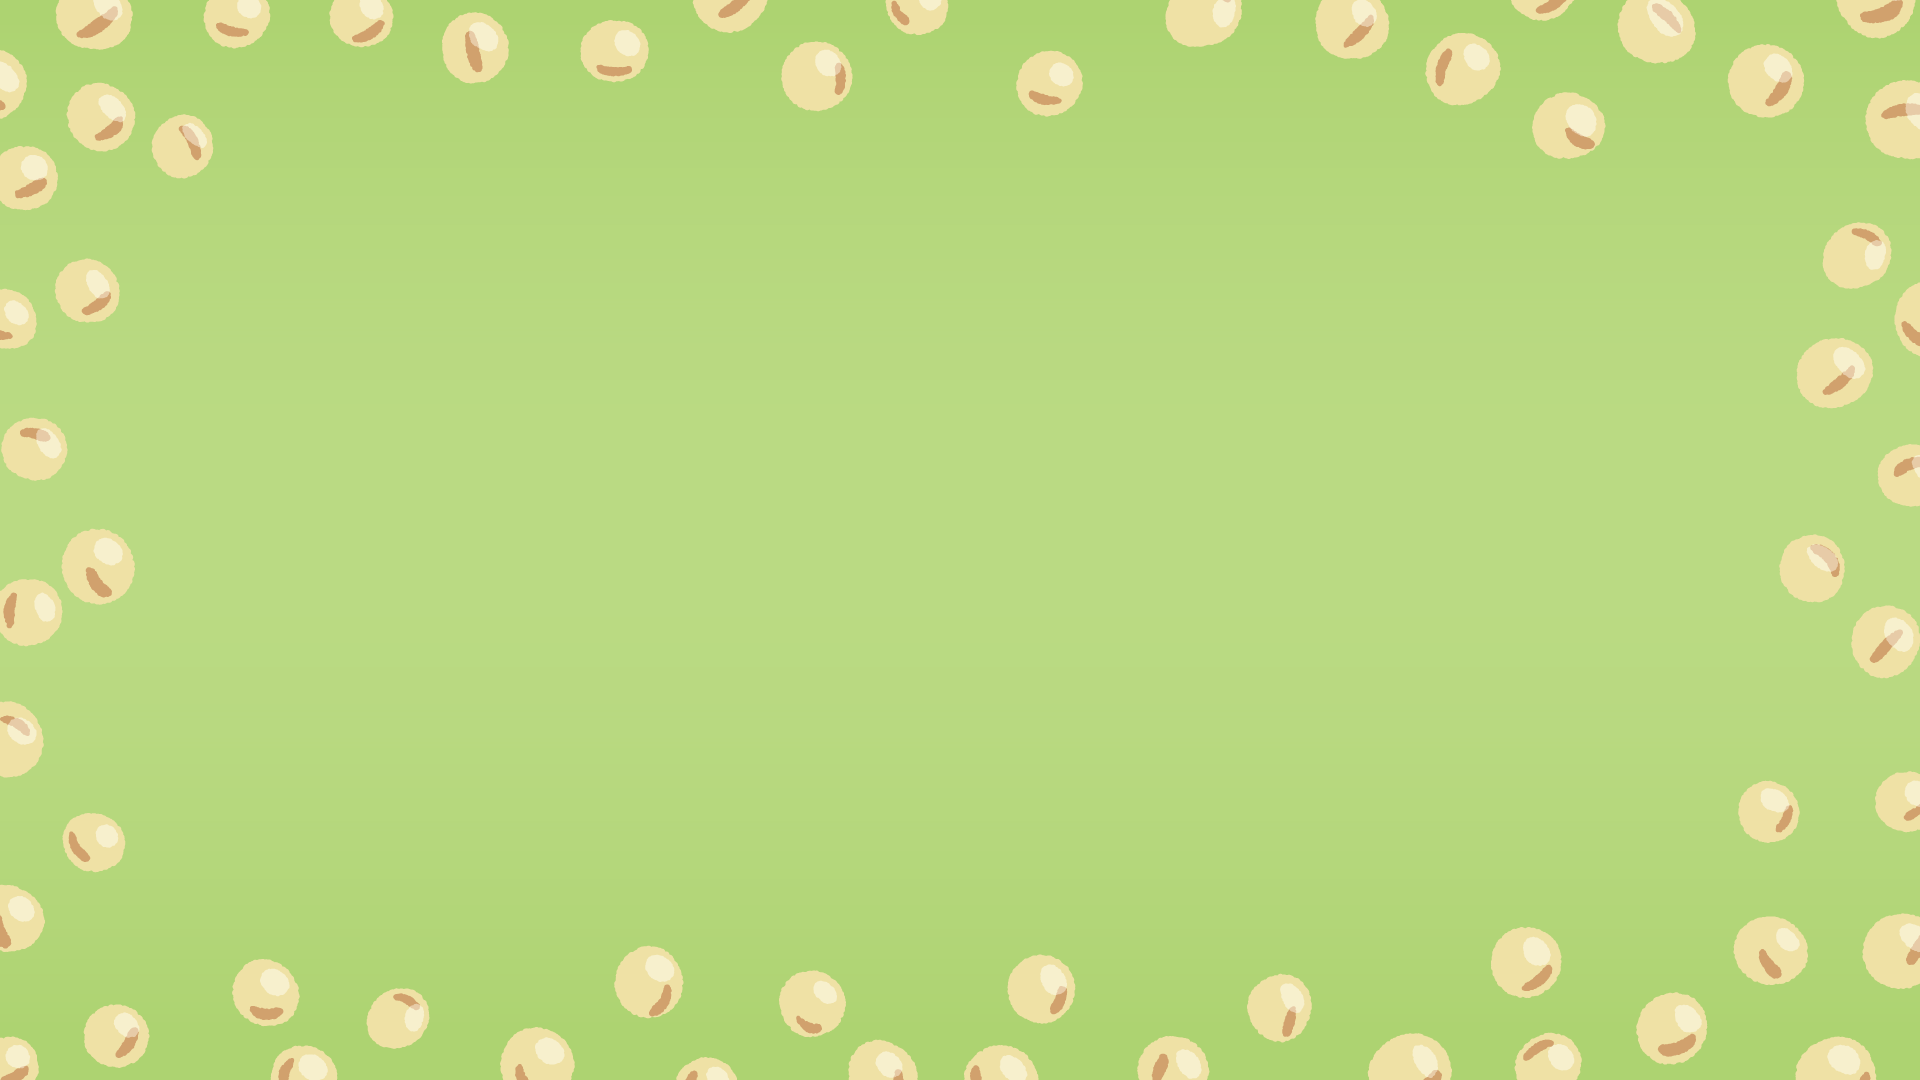 大豆の背景素材のフリーイラスト Clip art of soy-beans background